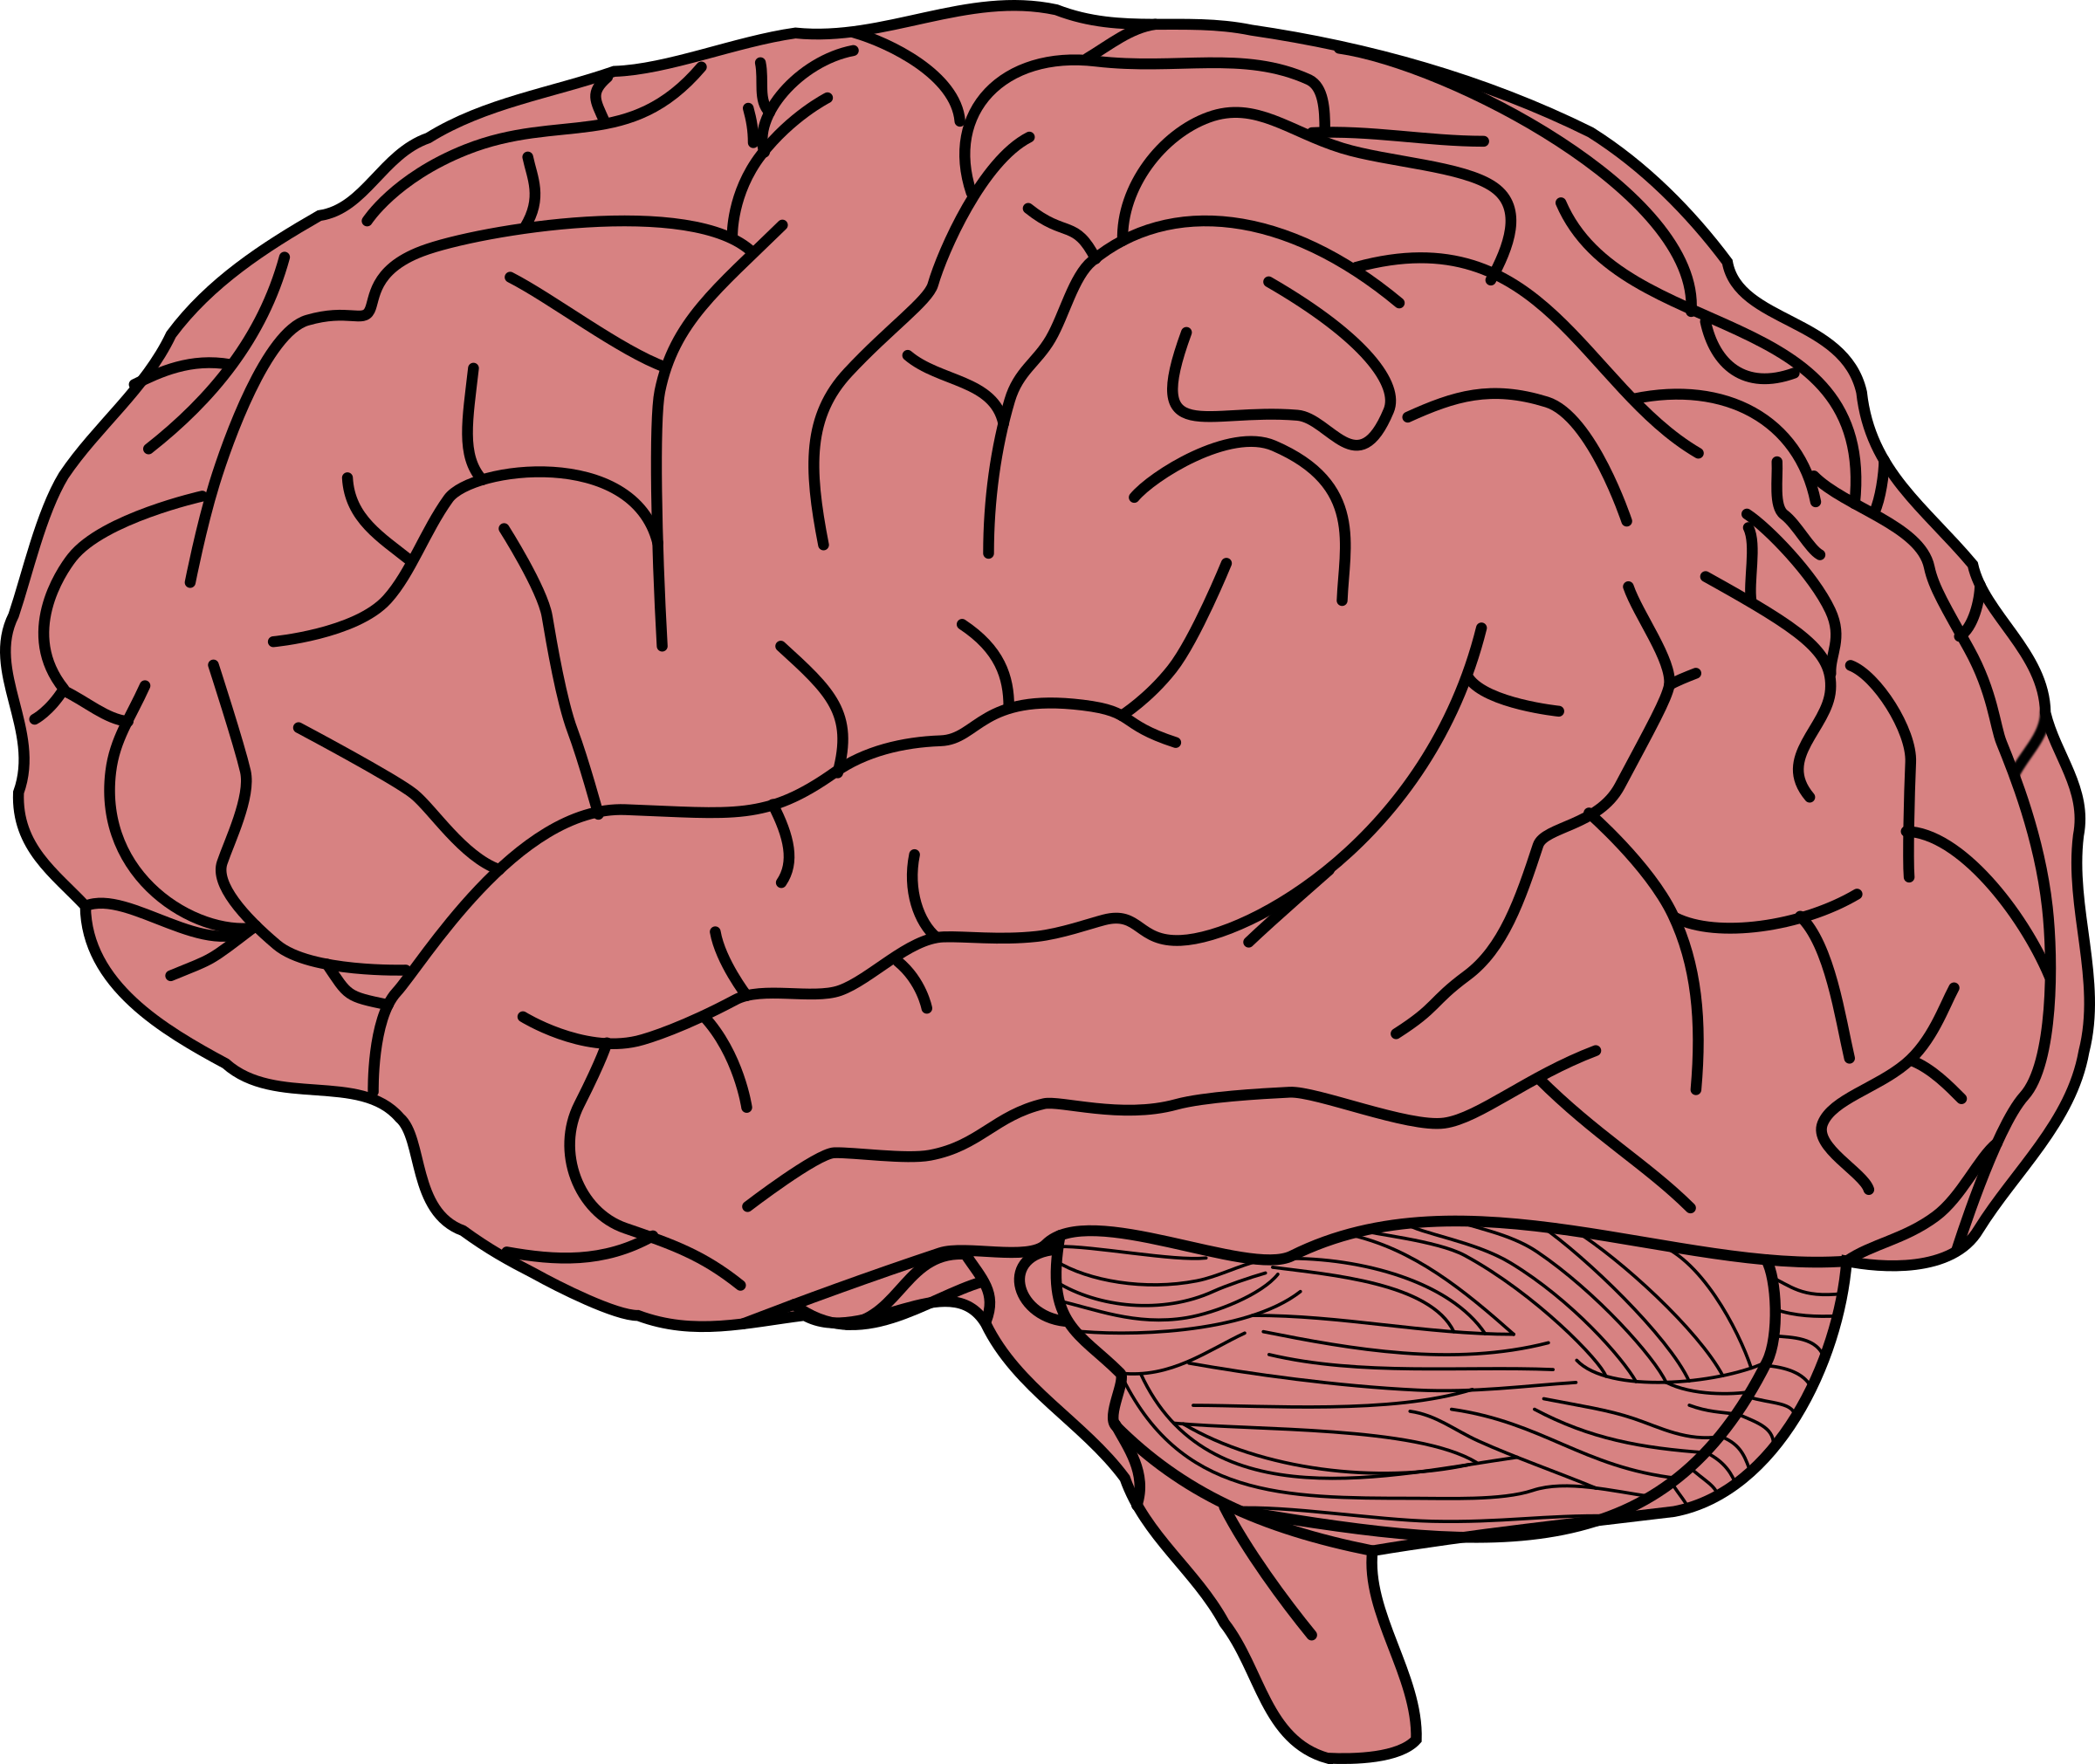 Human brain memory.